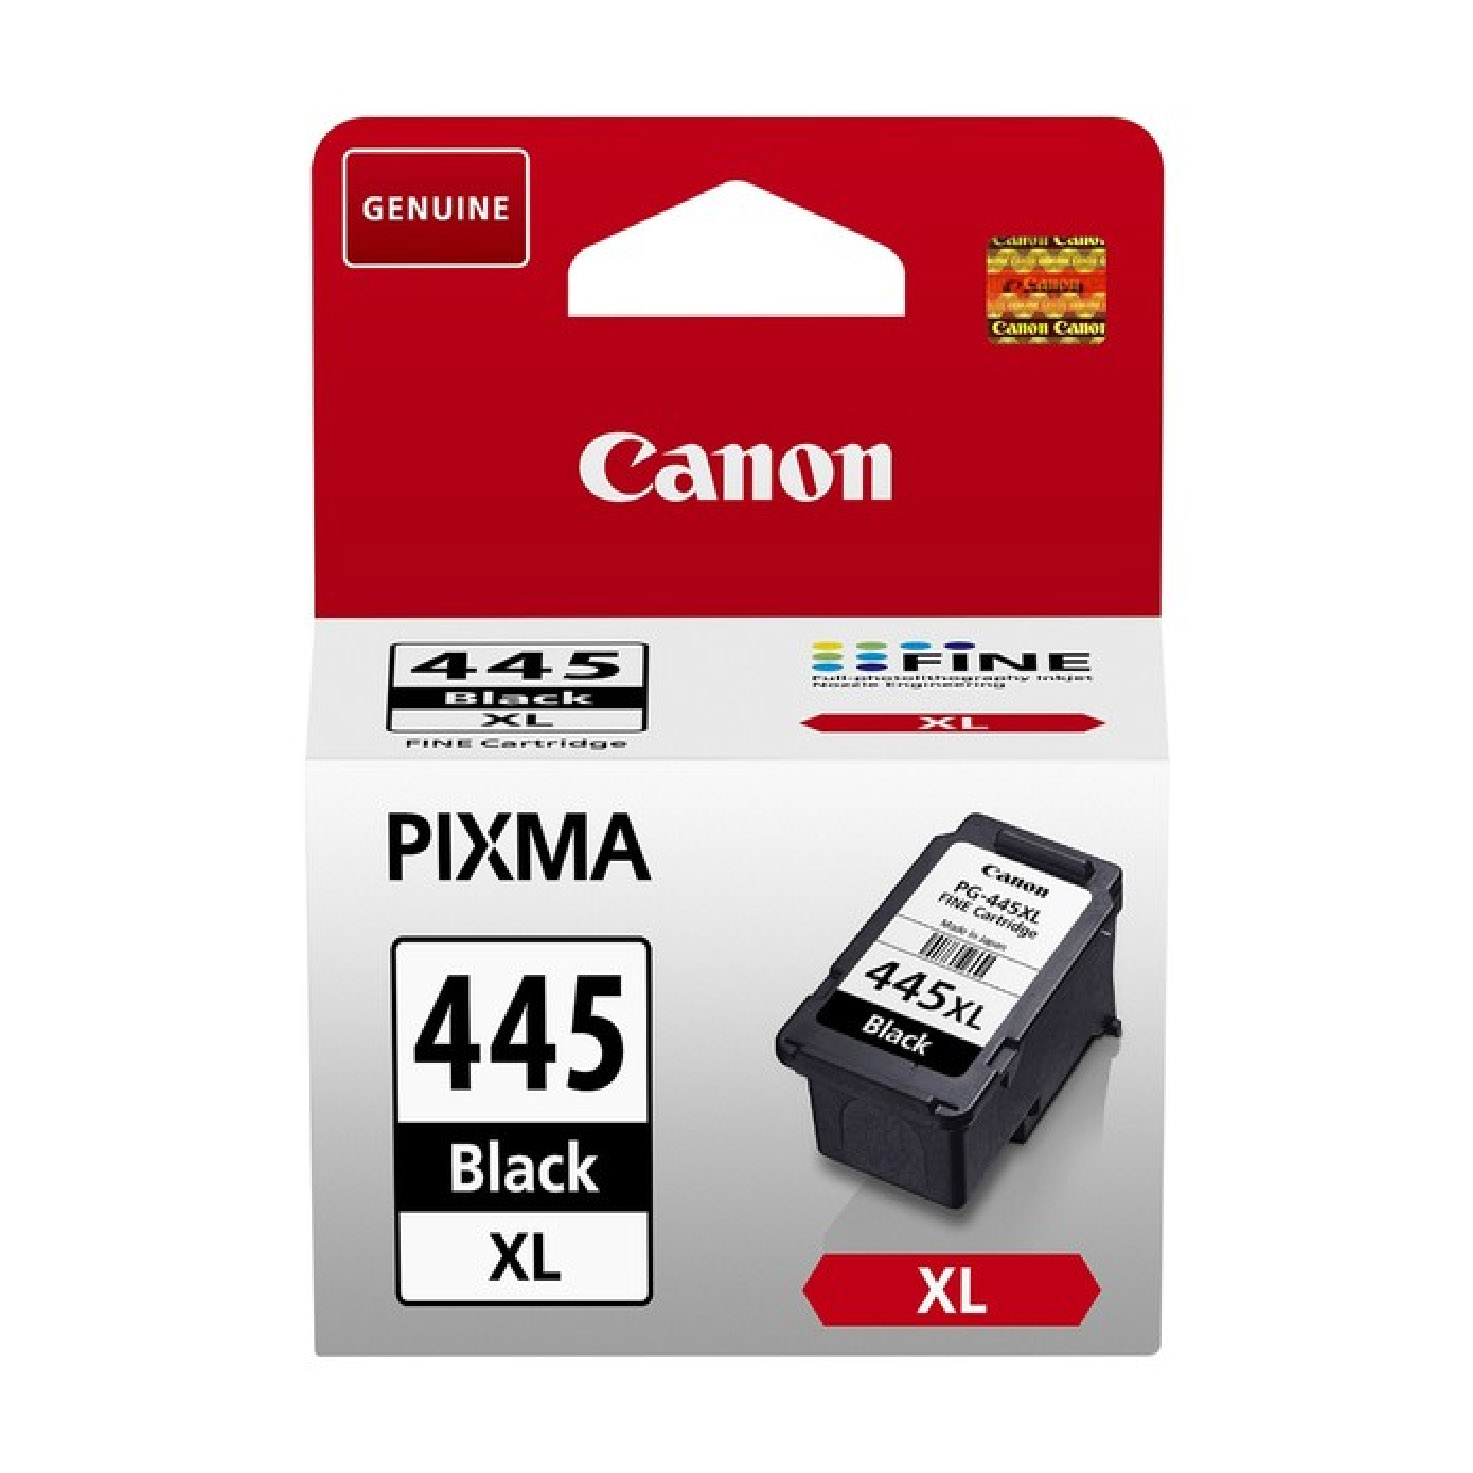 Canon pg 445 картридж для принтера купить. Картридж Canon PG 445 изнутри. Картридж Canon PG-445 черный, № 445 оригинальный. Canon PG-445xl разобранный. ￼ ￼ хиты недели −58% картридж для Canon PG-445xl Black.